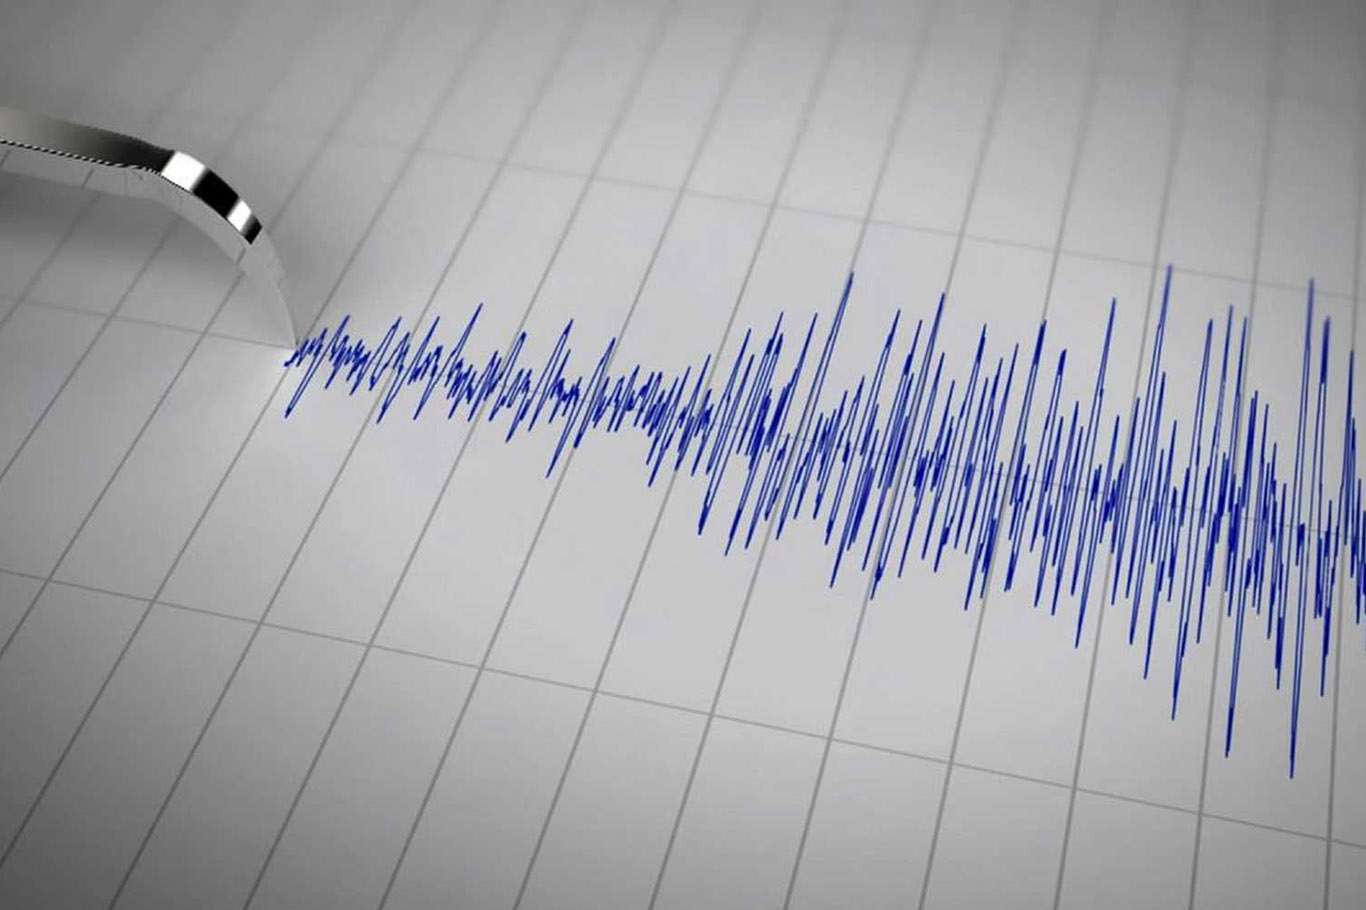 A 4.2 magnitude earthquake occurs in Marmara Sea